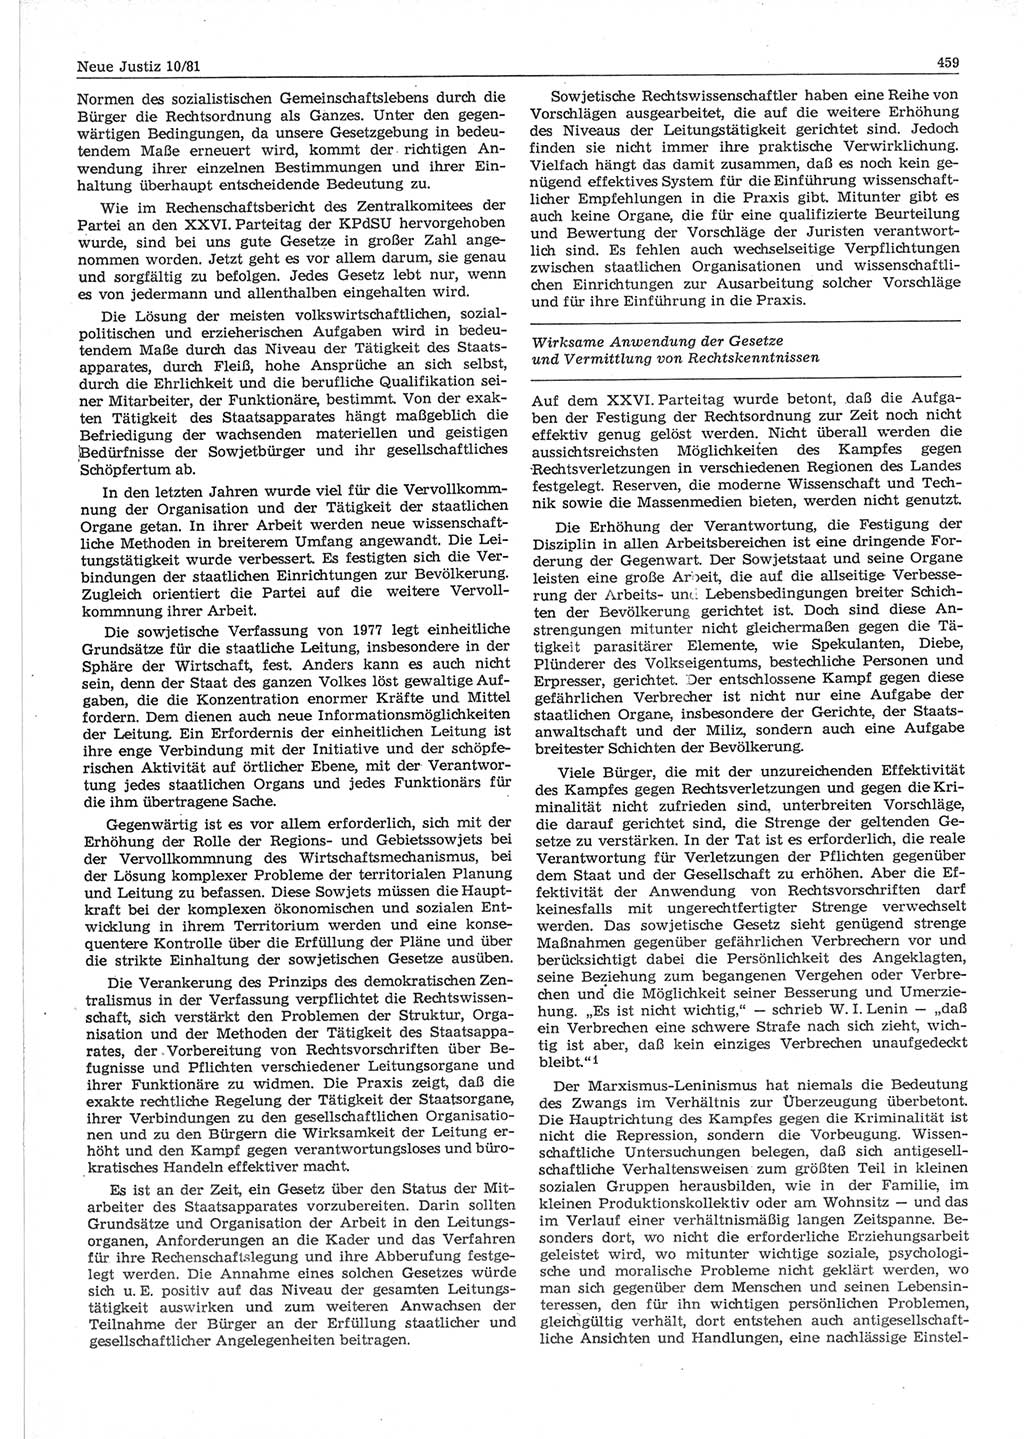 Neue Justiz (NJ), Zeitschrift für sozialistisches Recht und Gesetzlichkeit [Deutsche Demokratische Republik (DDR)], 35. Jahrgang 1981, Seite 459 (NJ DDR 1981, S. 459)